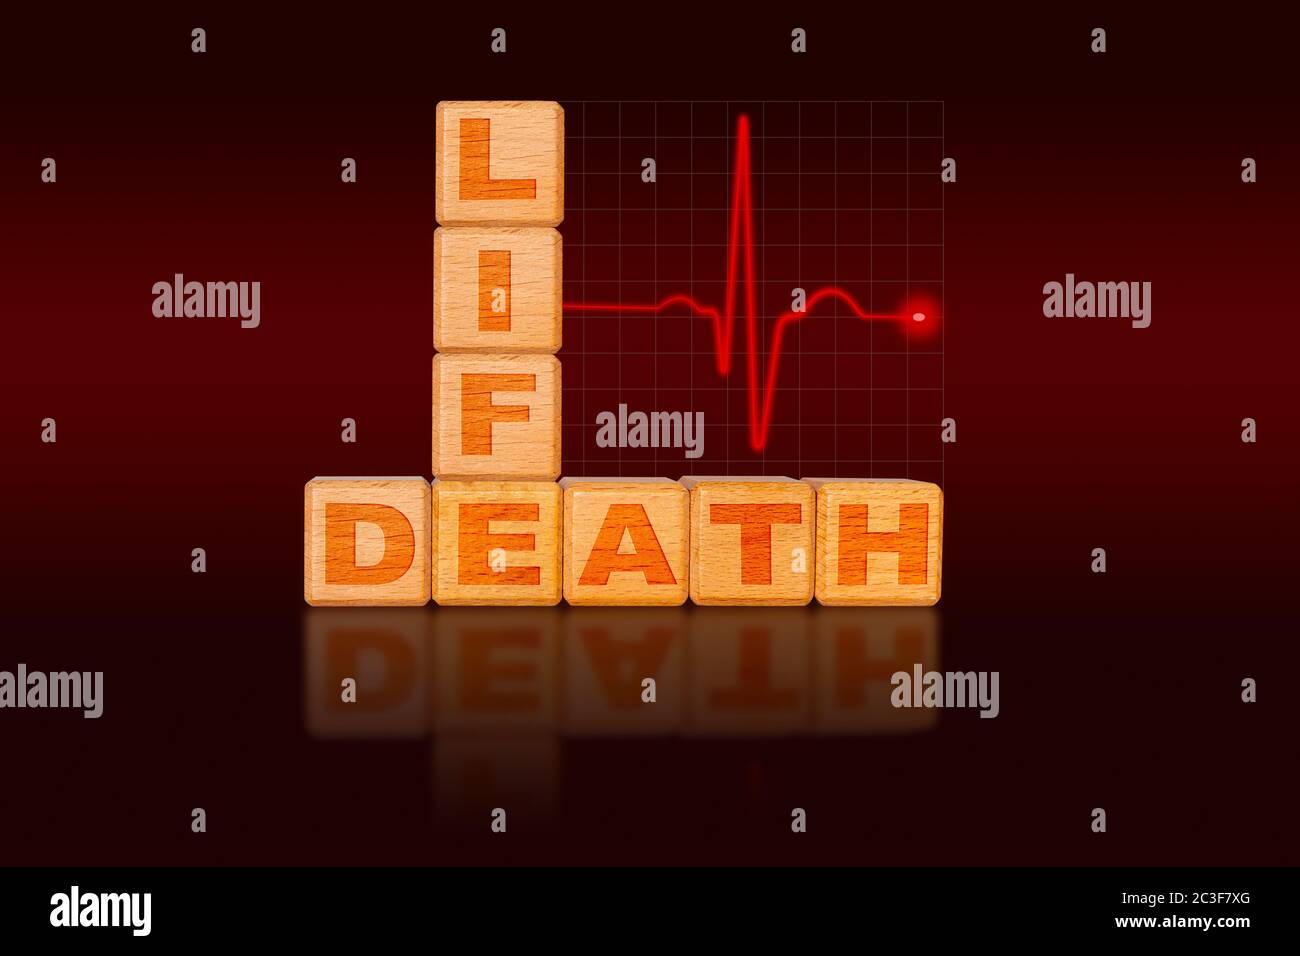 Leben und Tod Konzept auf Alphabet-Blöcke in Form eines Diagramms mit EKG-Elektrokardiogramm geschrieben, die starke Herzschlag zunächst gefolgt von fl Stockfoto